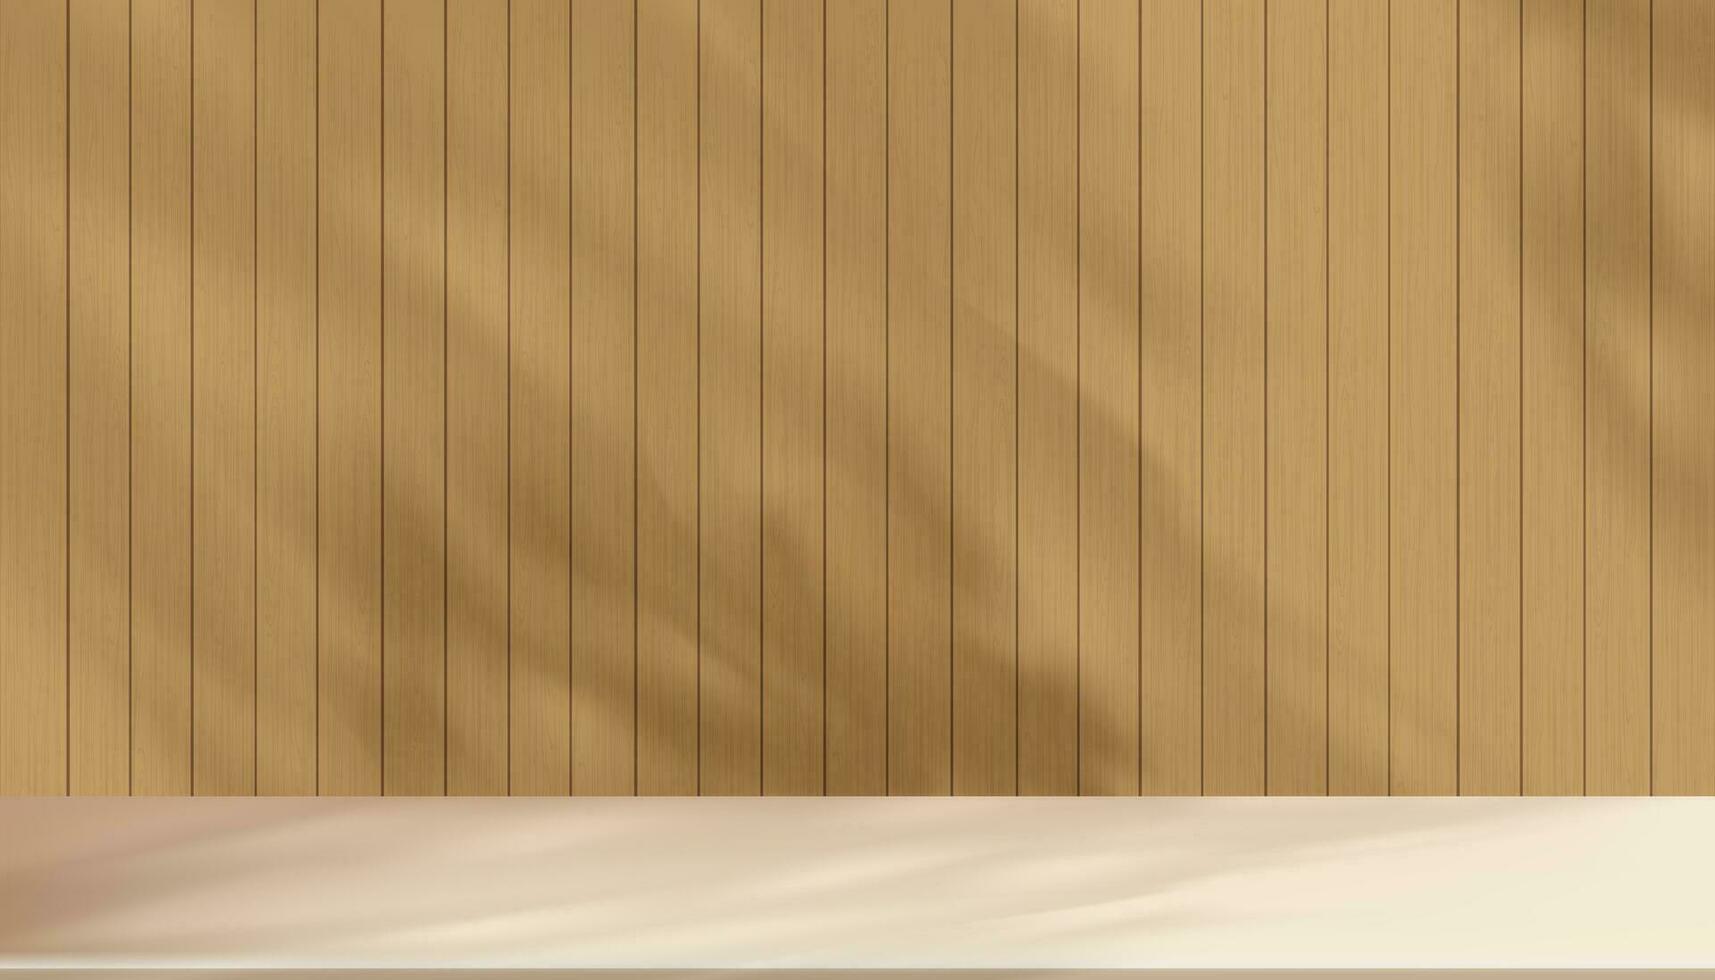 sfondo studio 3d beige Schermo con ombra le foglie su Marrone legna parete camera con cemento piano, concetto per biologico cosmetico Prodotto presentazione,autunno, inverno vendita in linea negozio, vettore